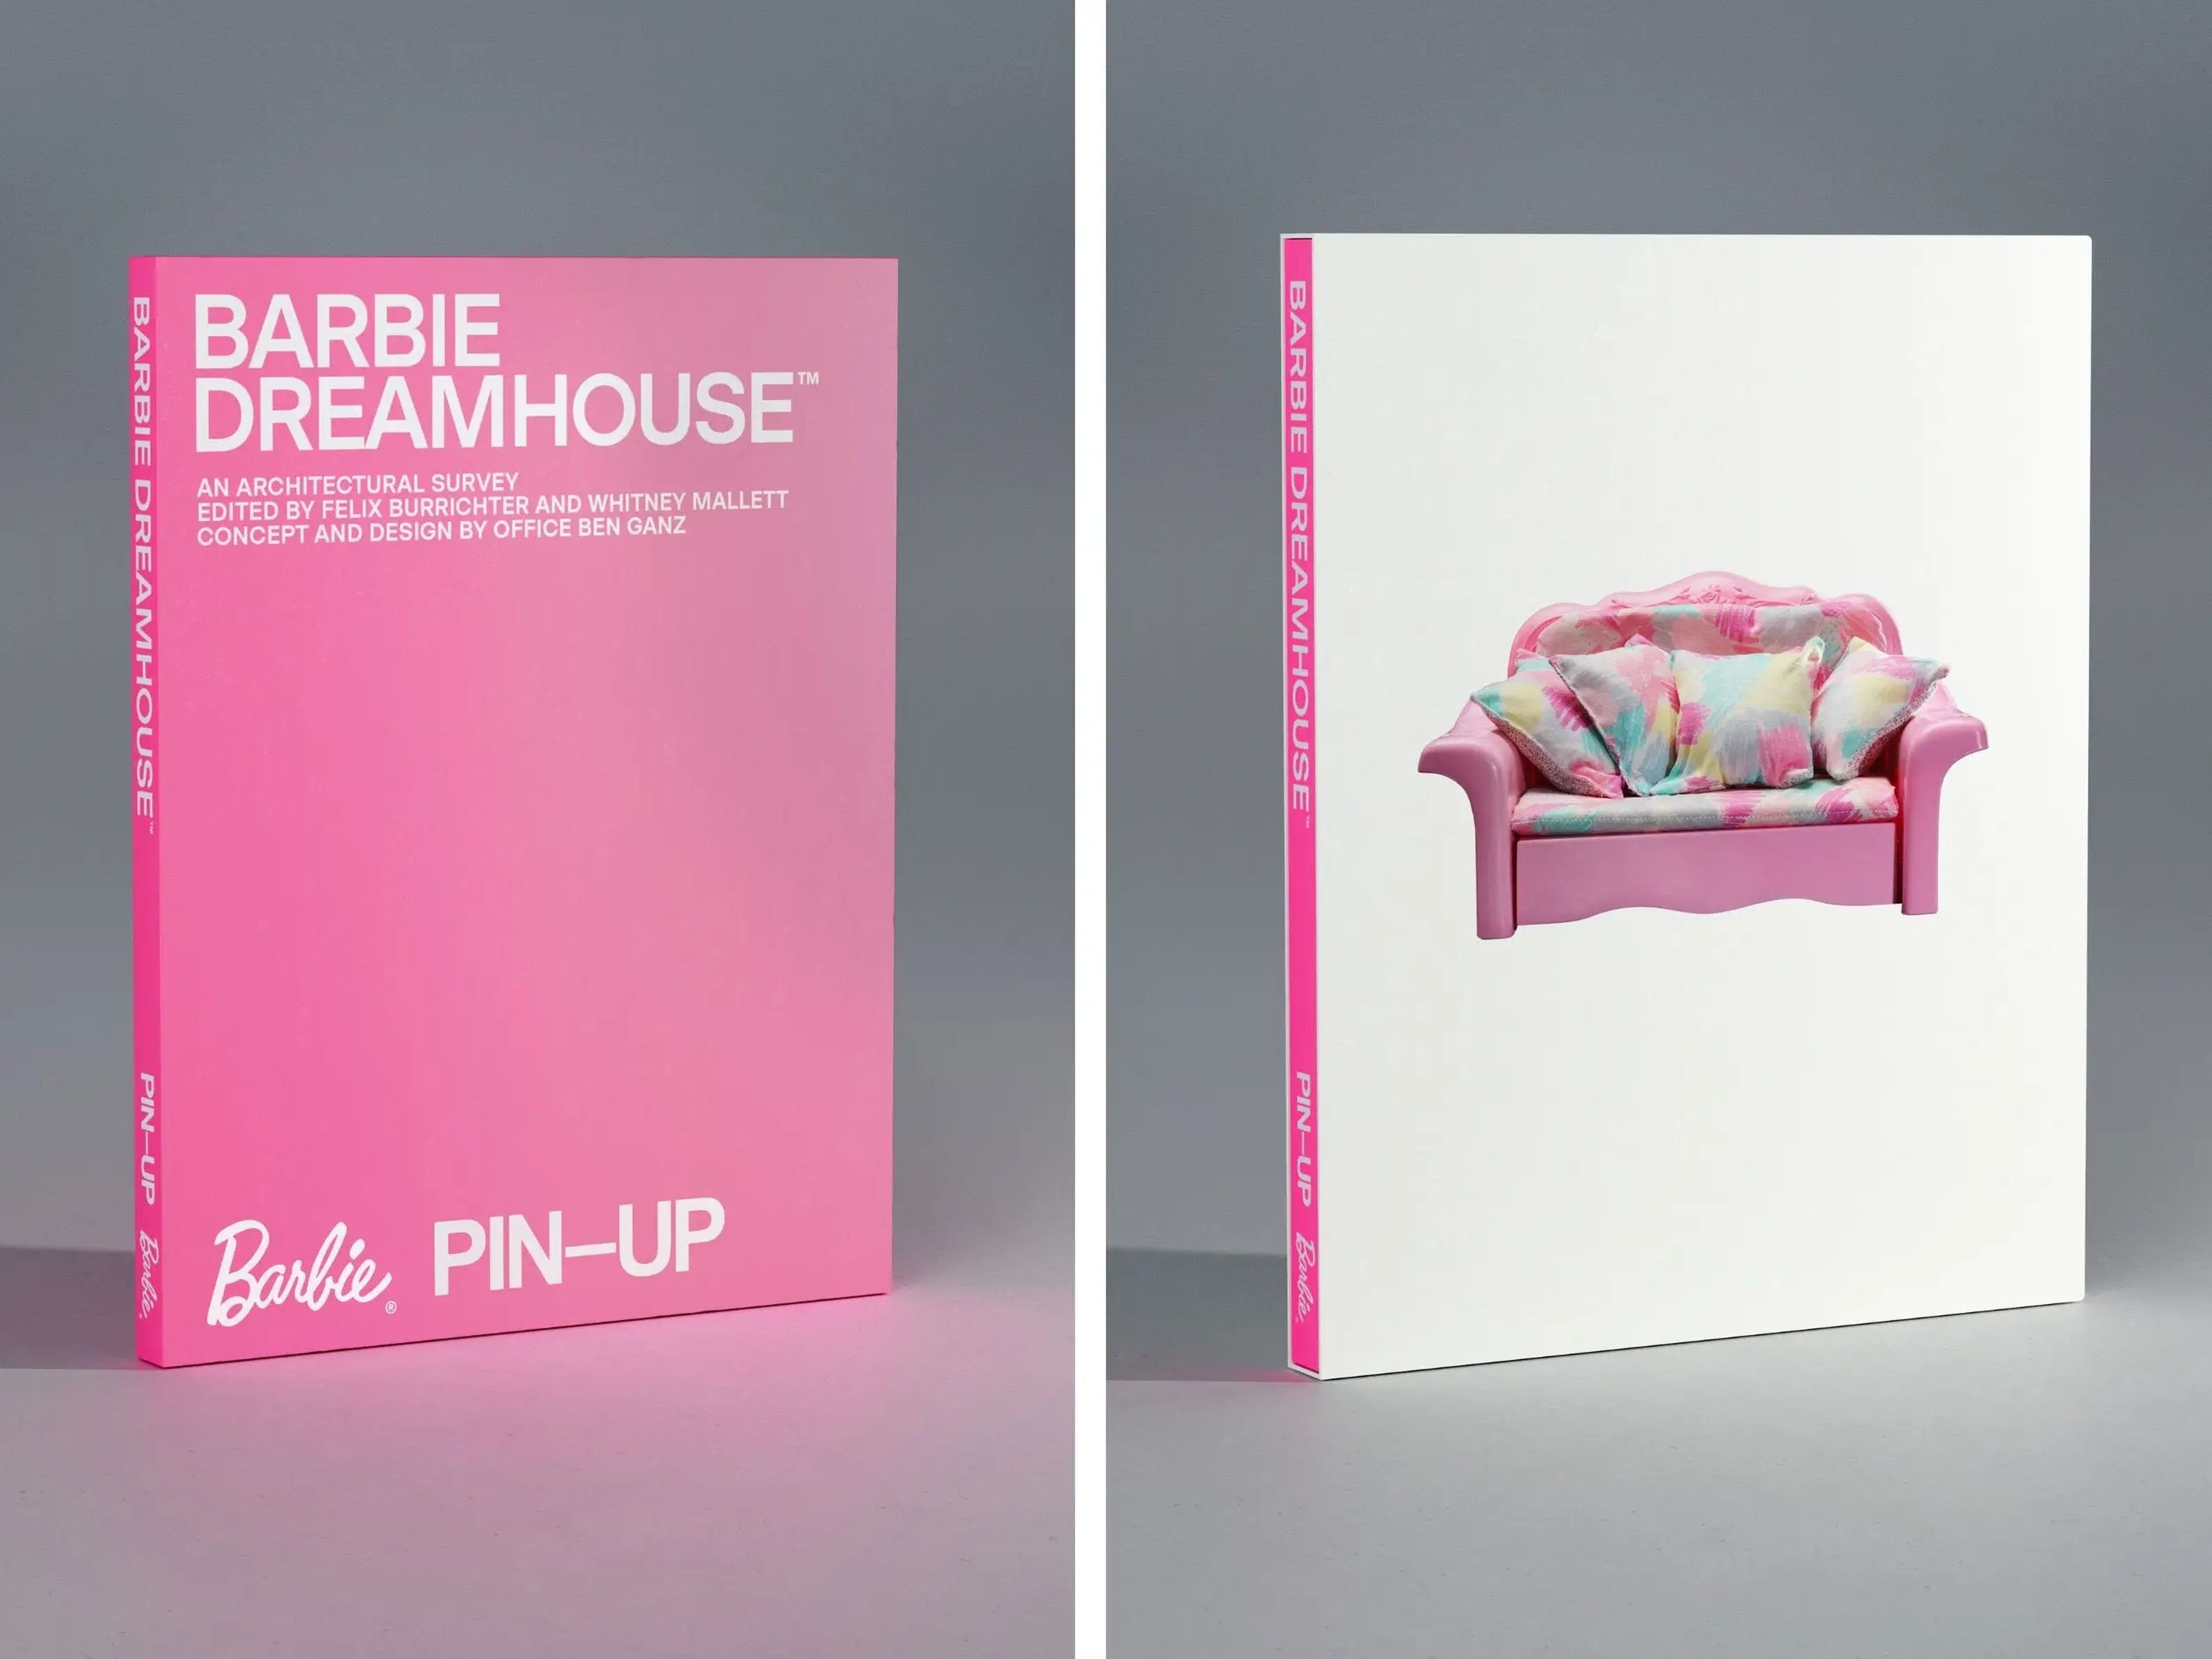 La portada y la funda de "Barbie Dreamhouse: An Architectural Survey"